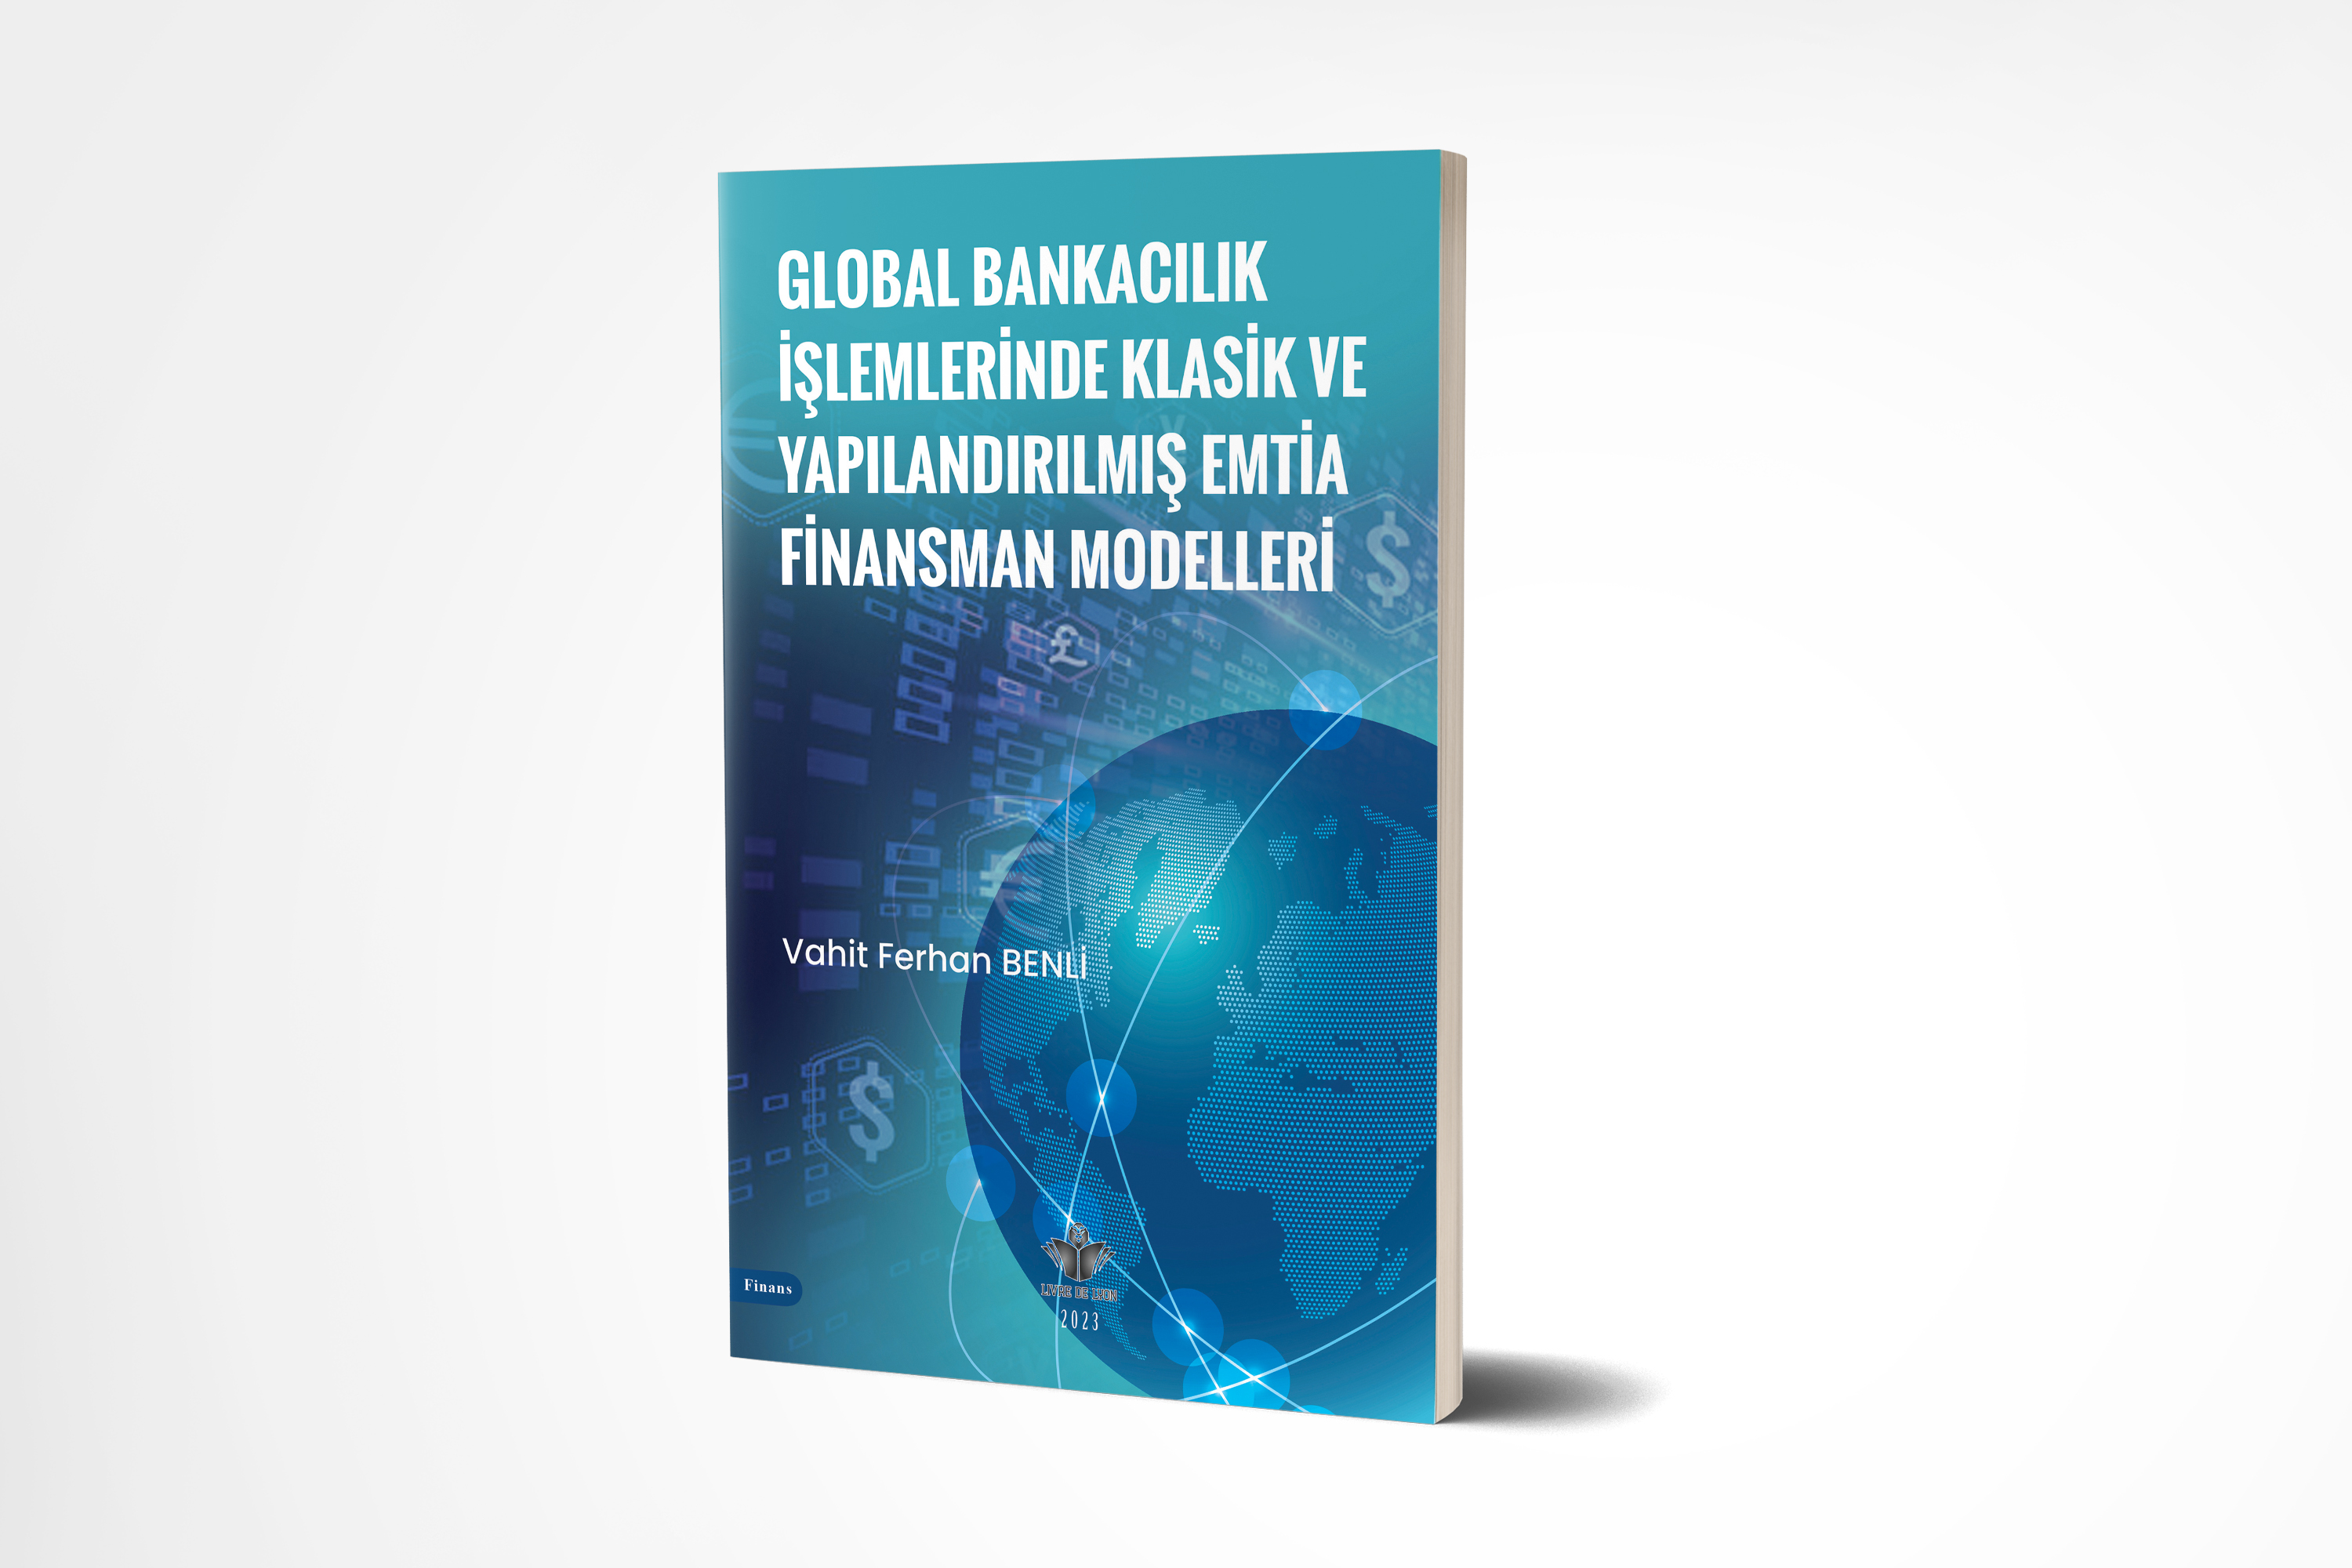 Global Bankacılık İşlemlerinde Klasik Ve Yapılandırılmış Emtia Finansman Modelleri